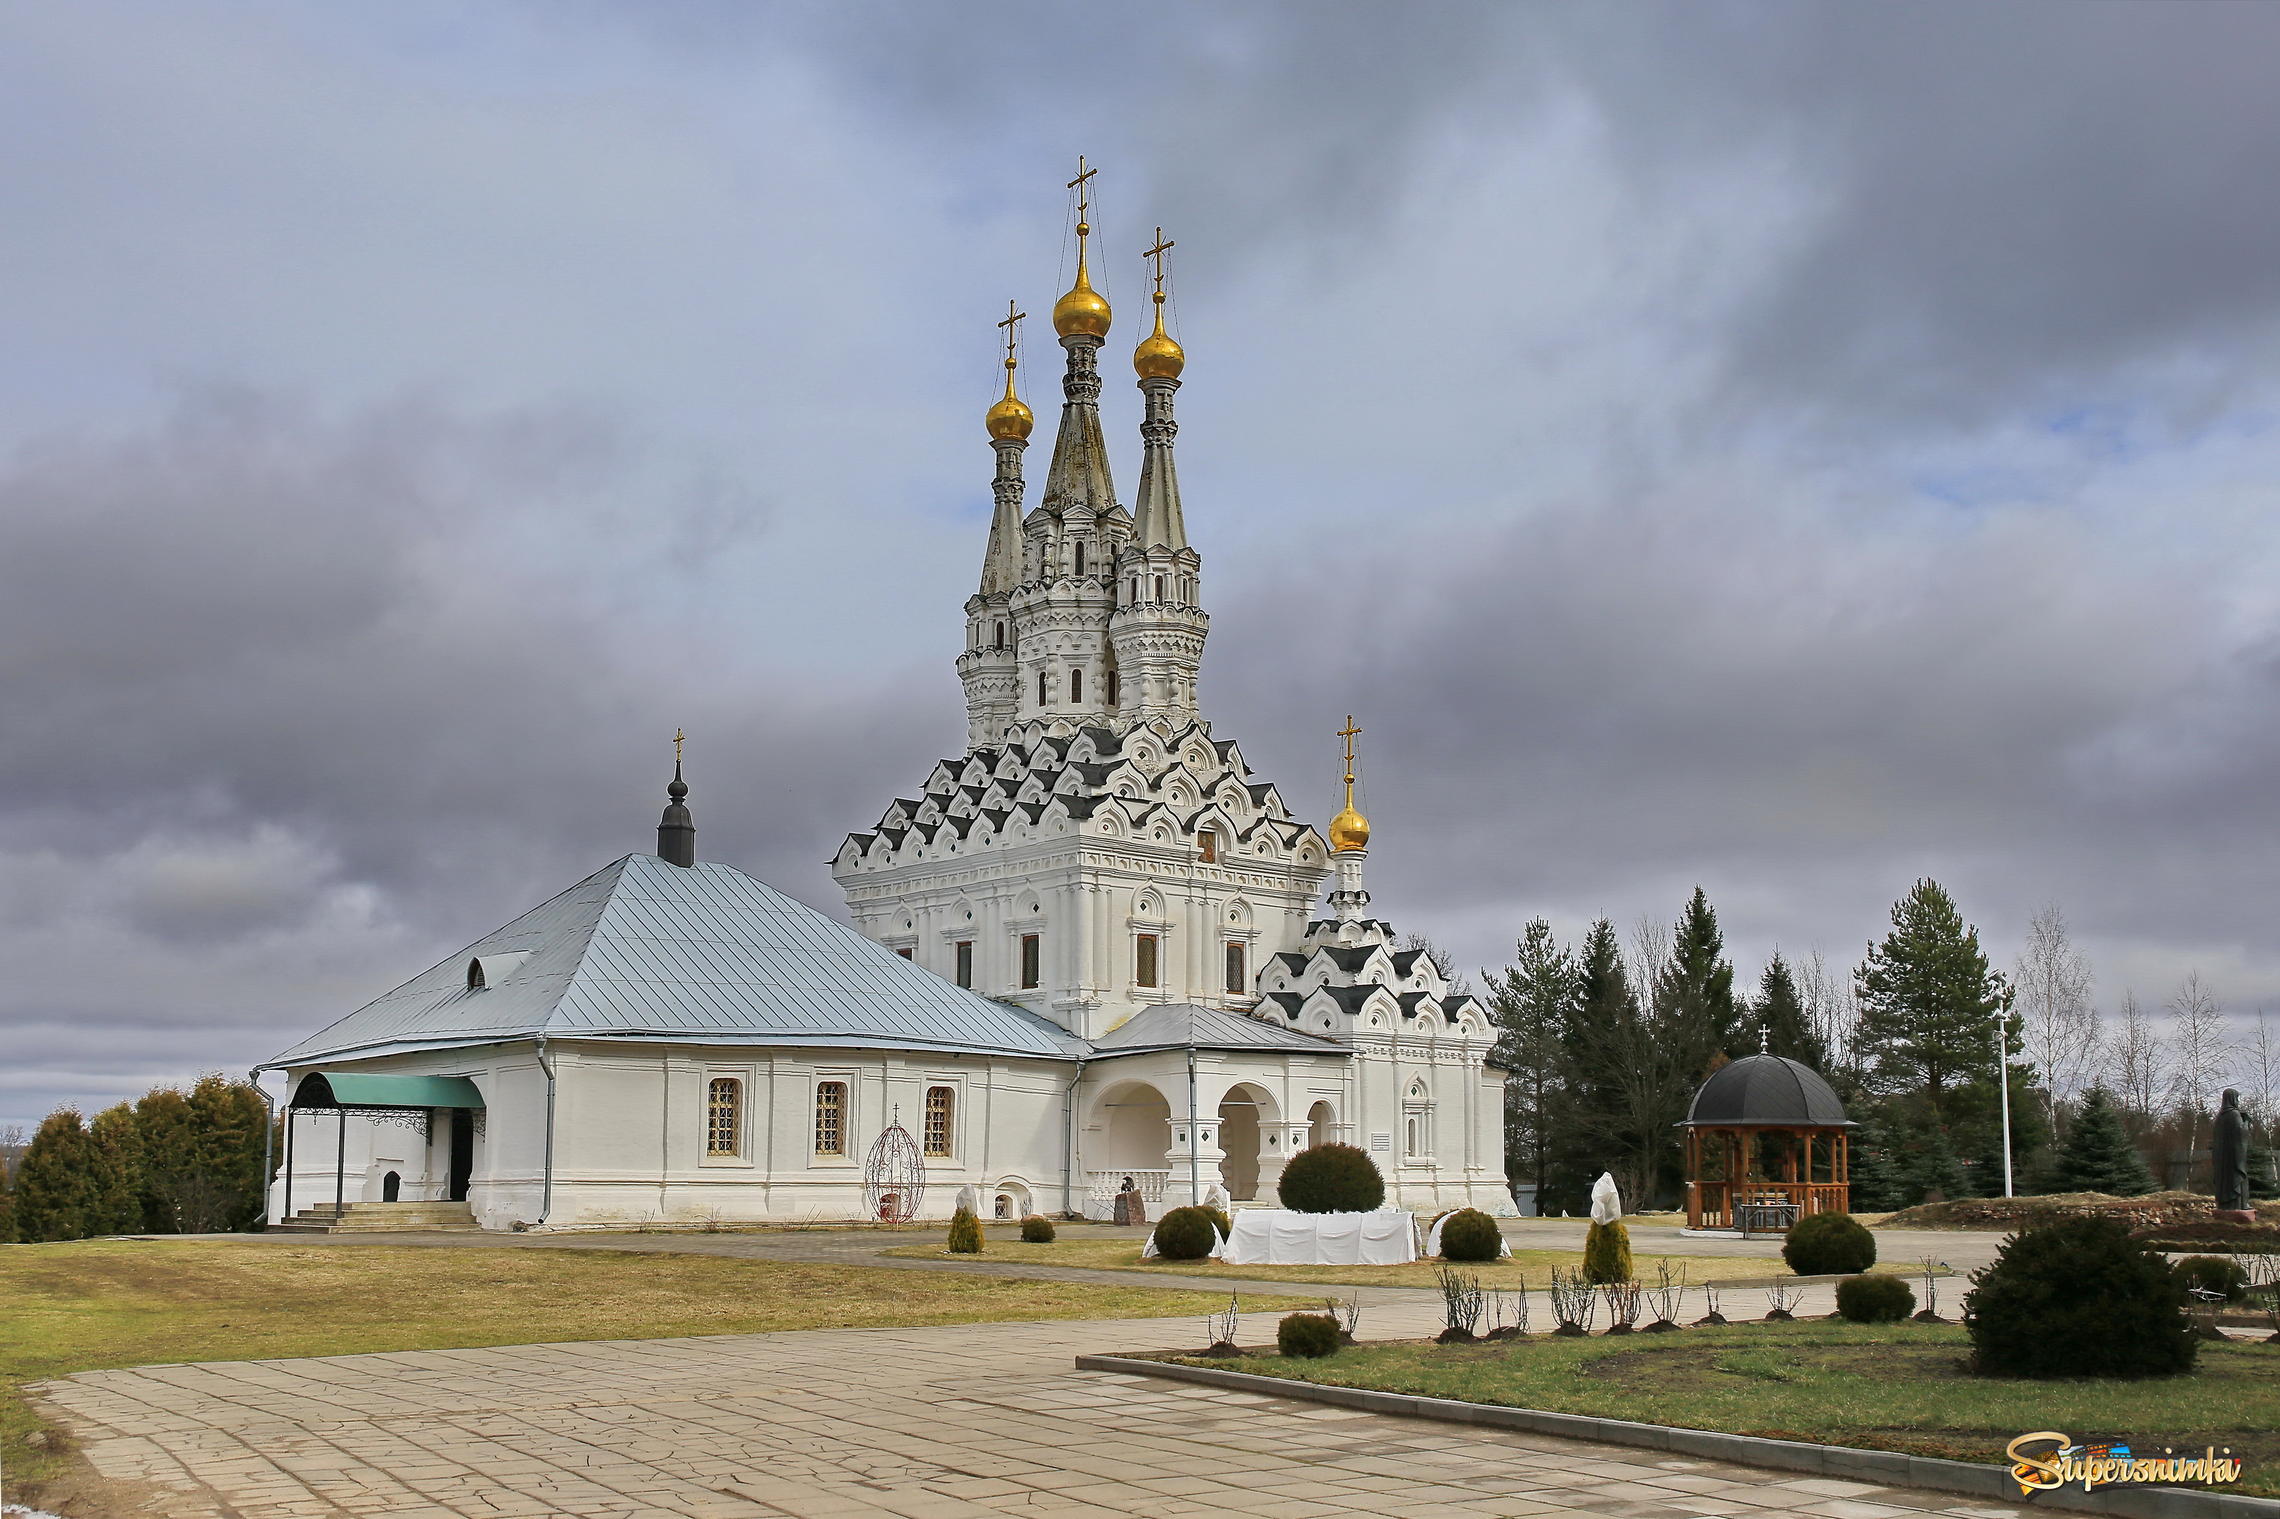  Одигитриевская церковь